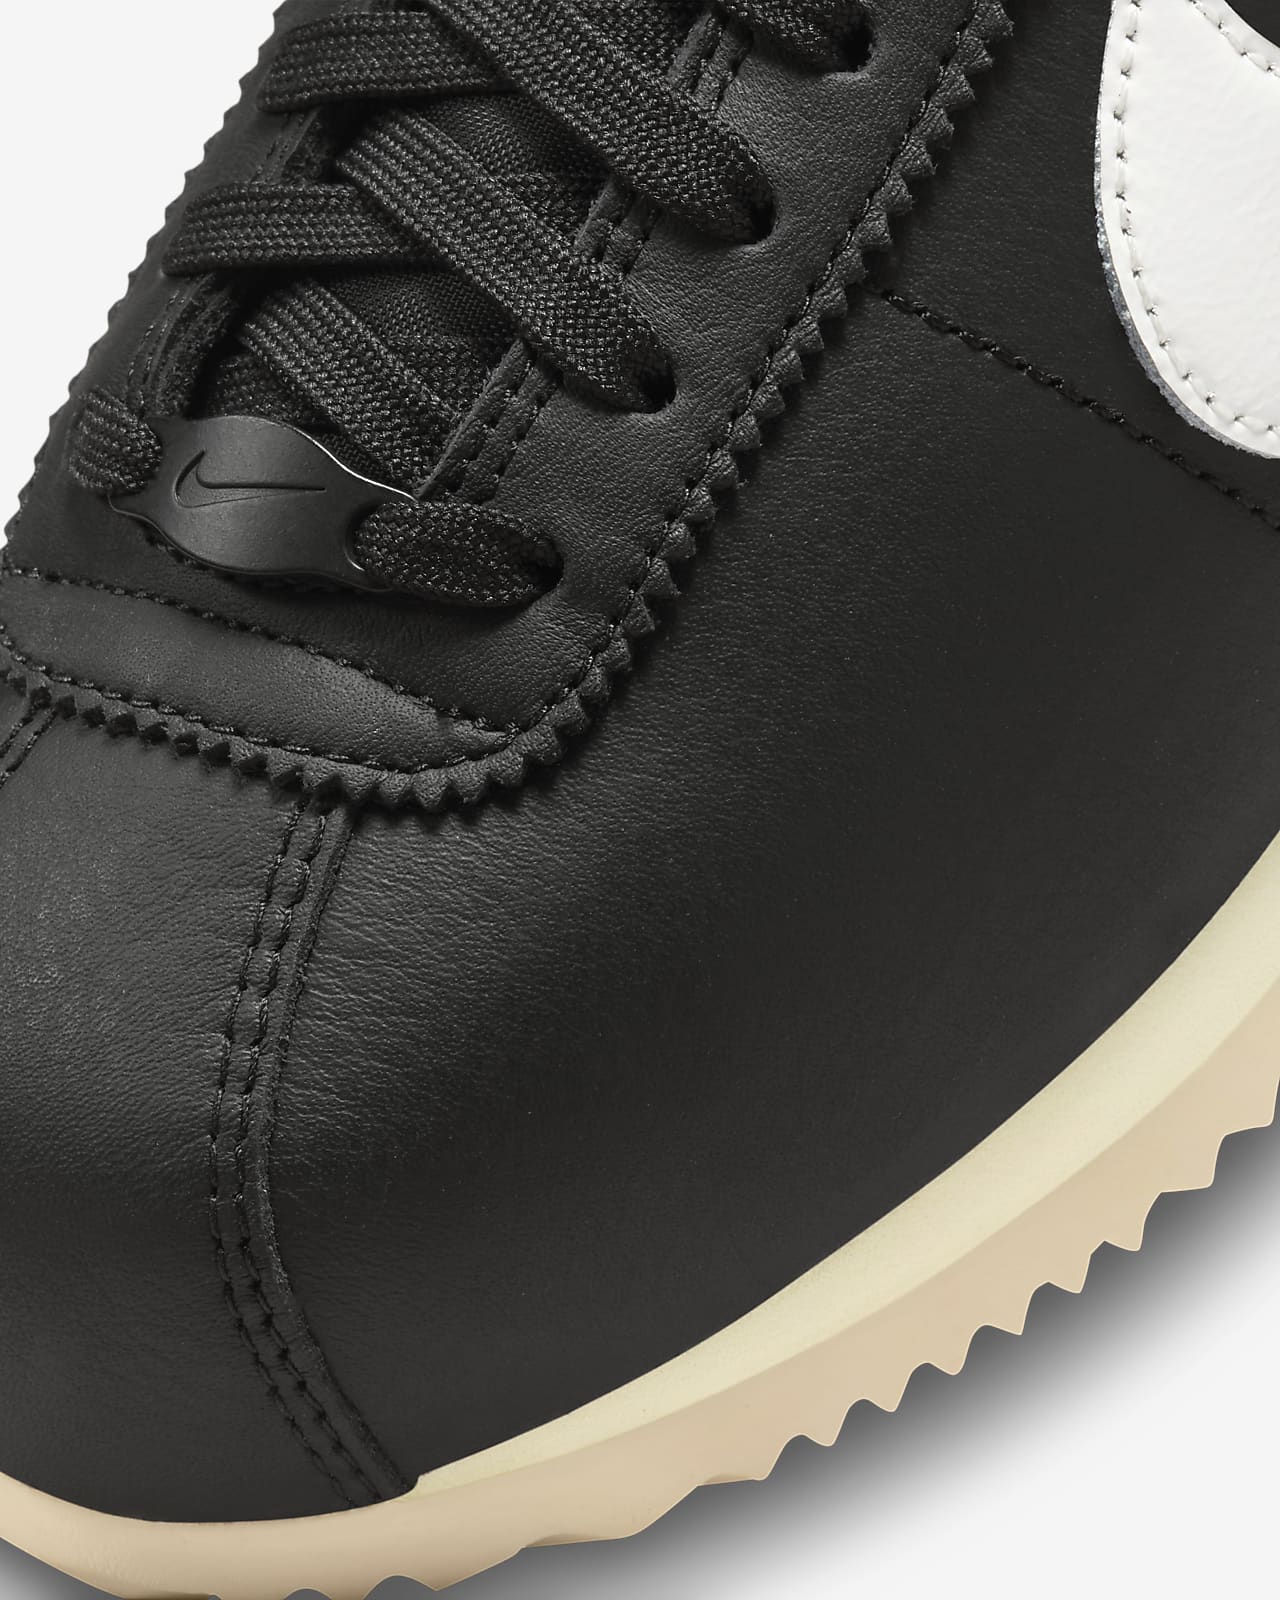 Nike Cortez 23 Premium Leather Women's Shoes